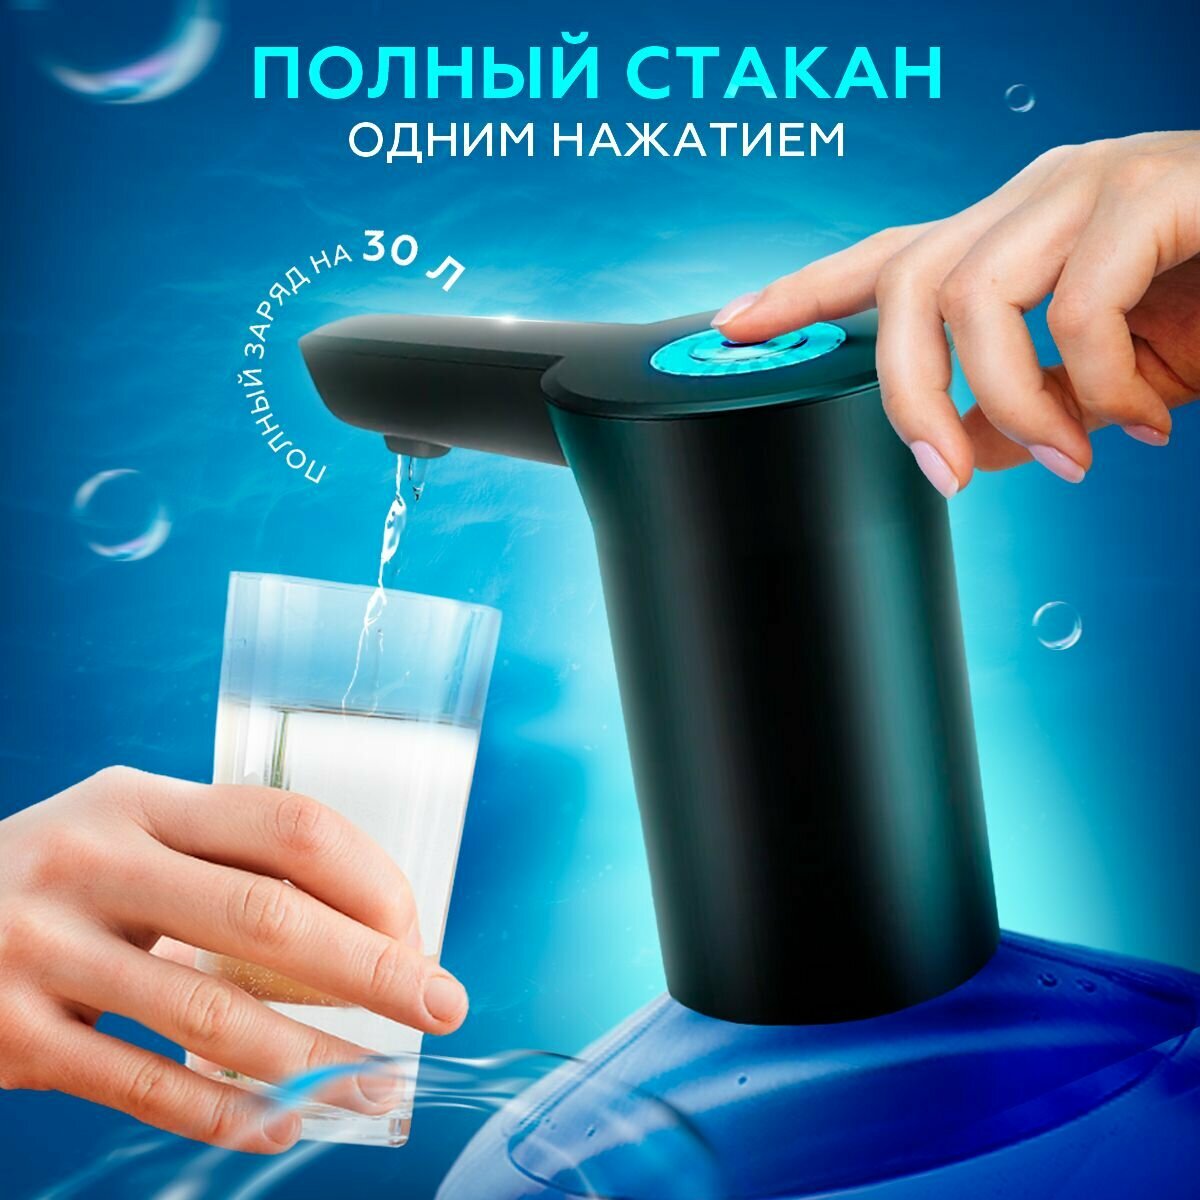 Электрическая помпа (диспенсер) для воды подходит для бутылей 5-19 литров